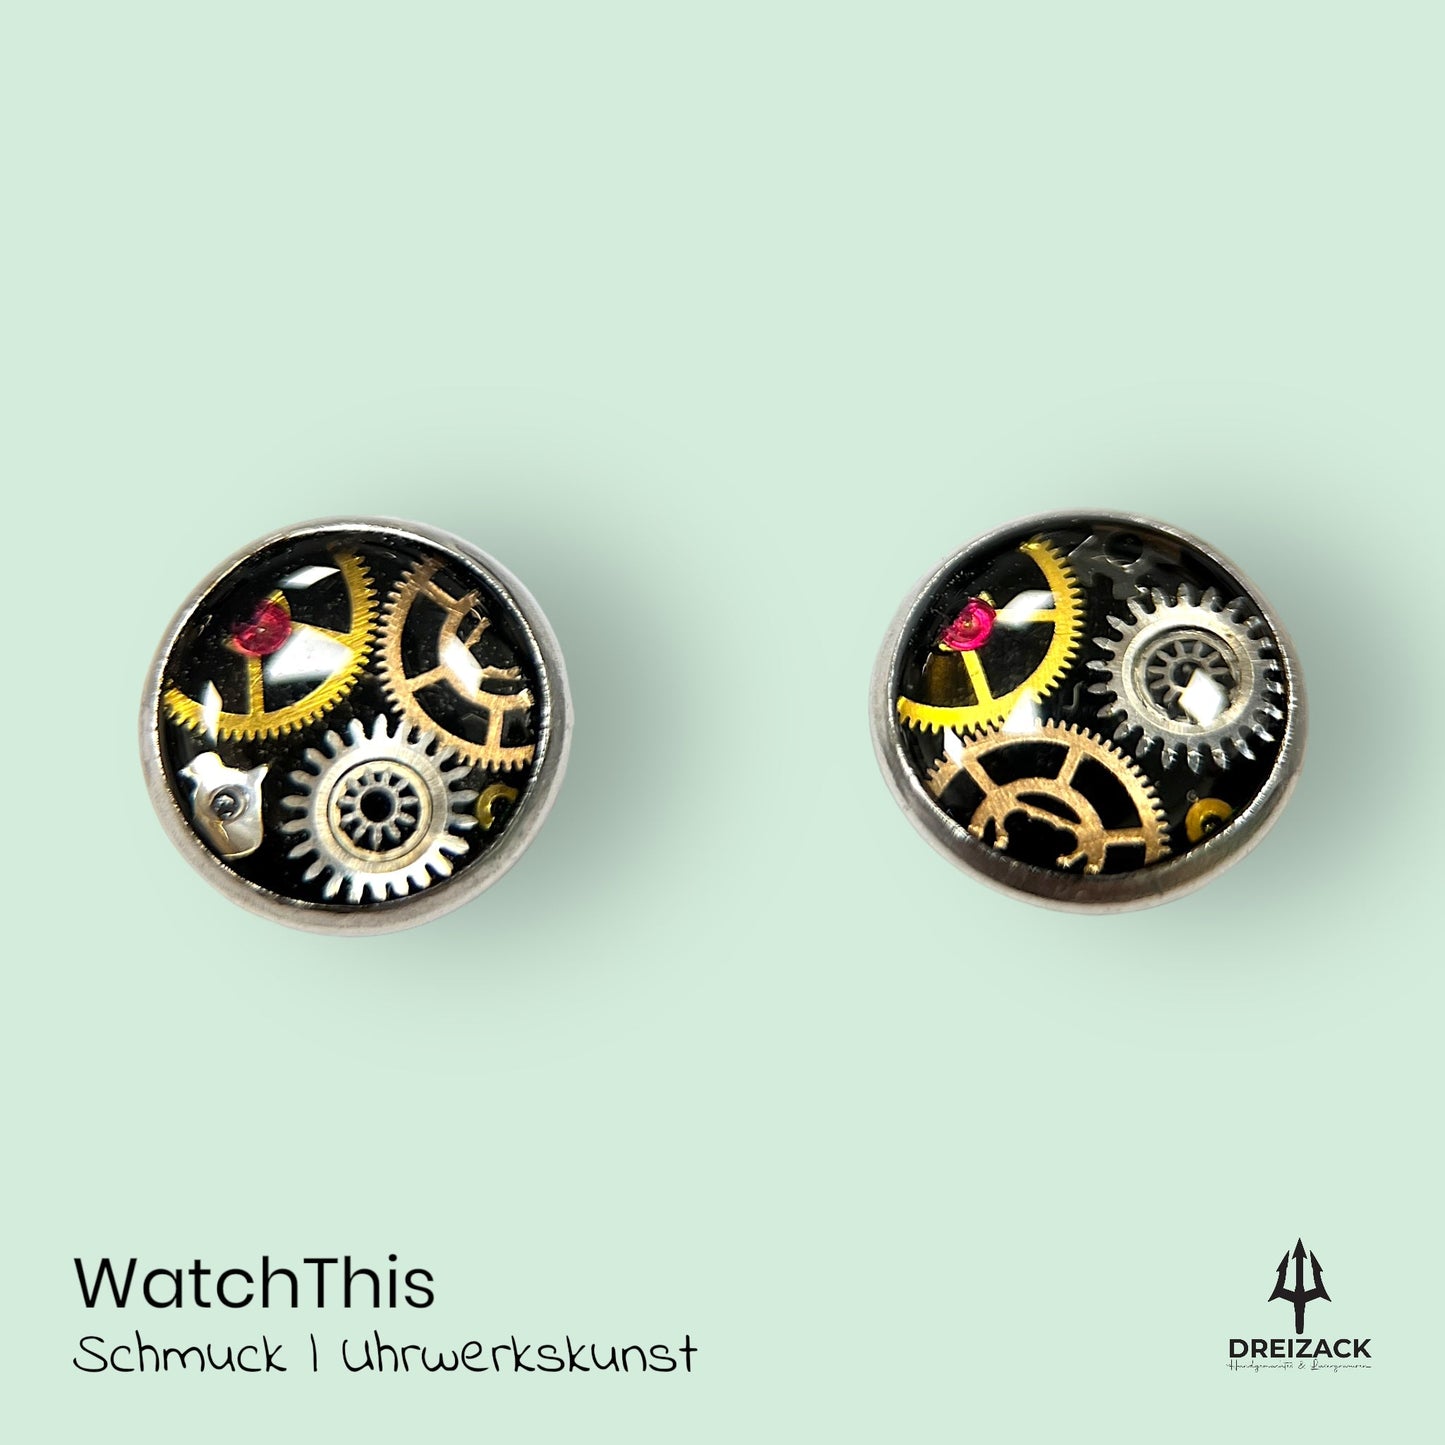 Ohrstecker von WatchThis - Zeitlose Eleganz aus Uhrwerken 8mm | Cynthia Schmuck WatchThis oesterreich handgemachte geschenke in wien